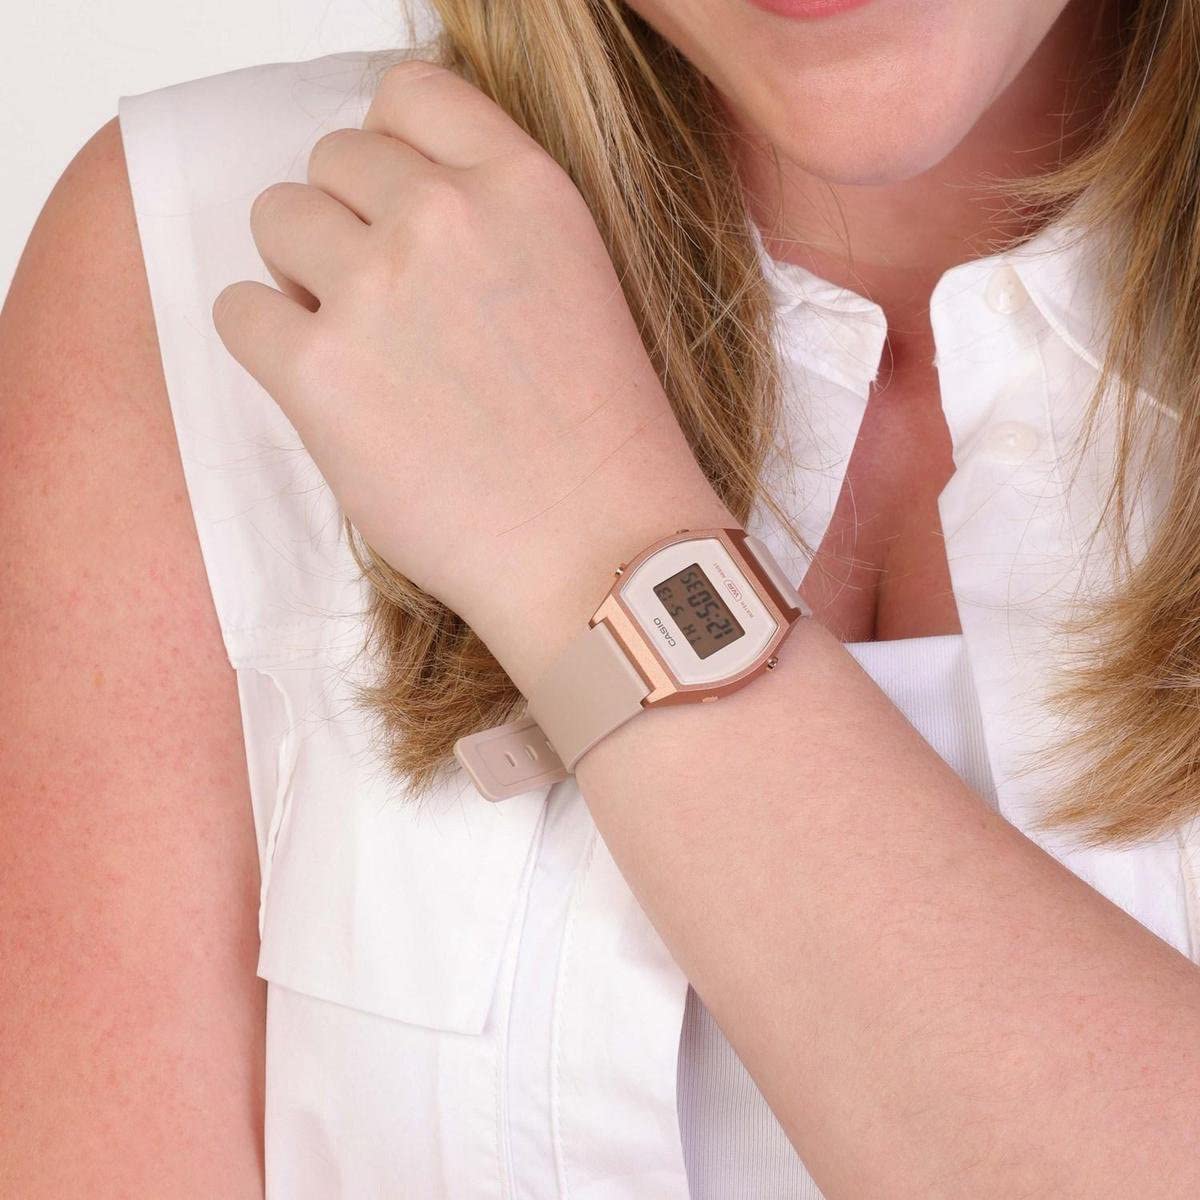 Casio LW-204-4AEF Women's Digital Quartz Watch with Plastic Strap, Pink, Strap